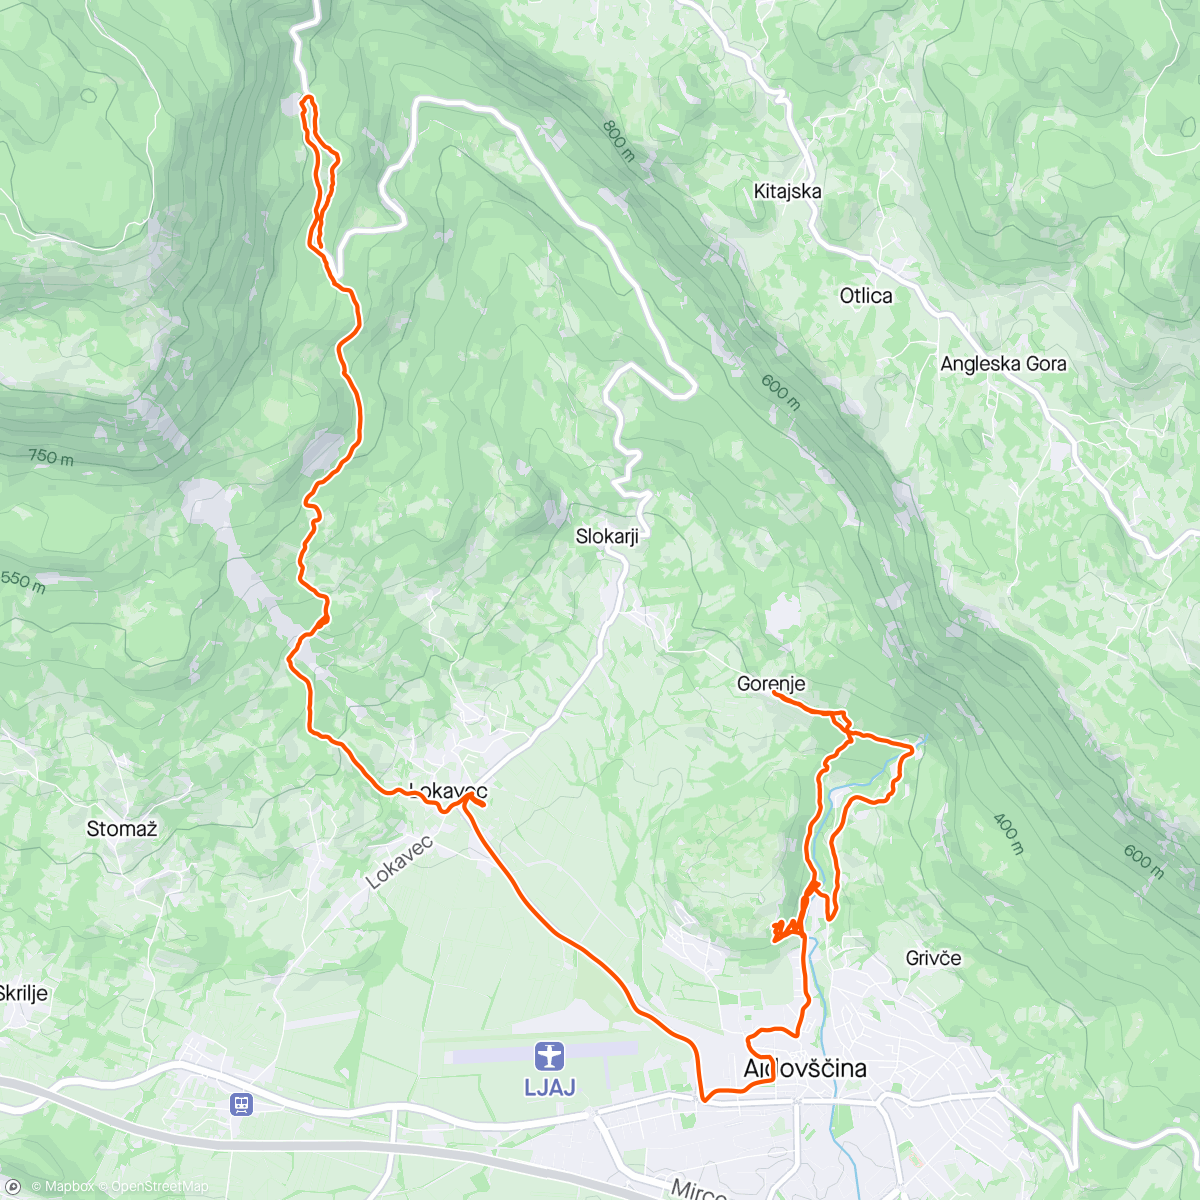 Mapa da atividade, Oggi trasferta in Slovenia a vedere dei trail nuovi…
In ottima compagnia di GIANCARL e David (piacevole scoperta)…
#orbea #unno #norco #mtb #enduro #trail #pump #pumptrack